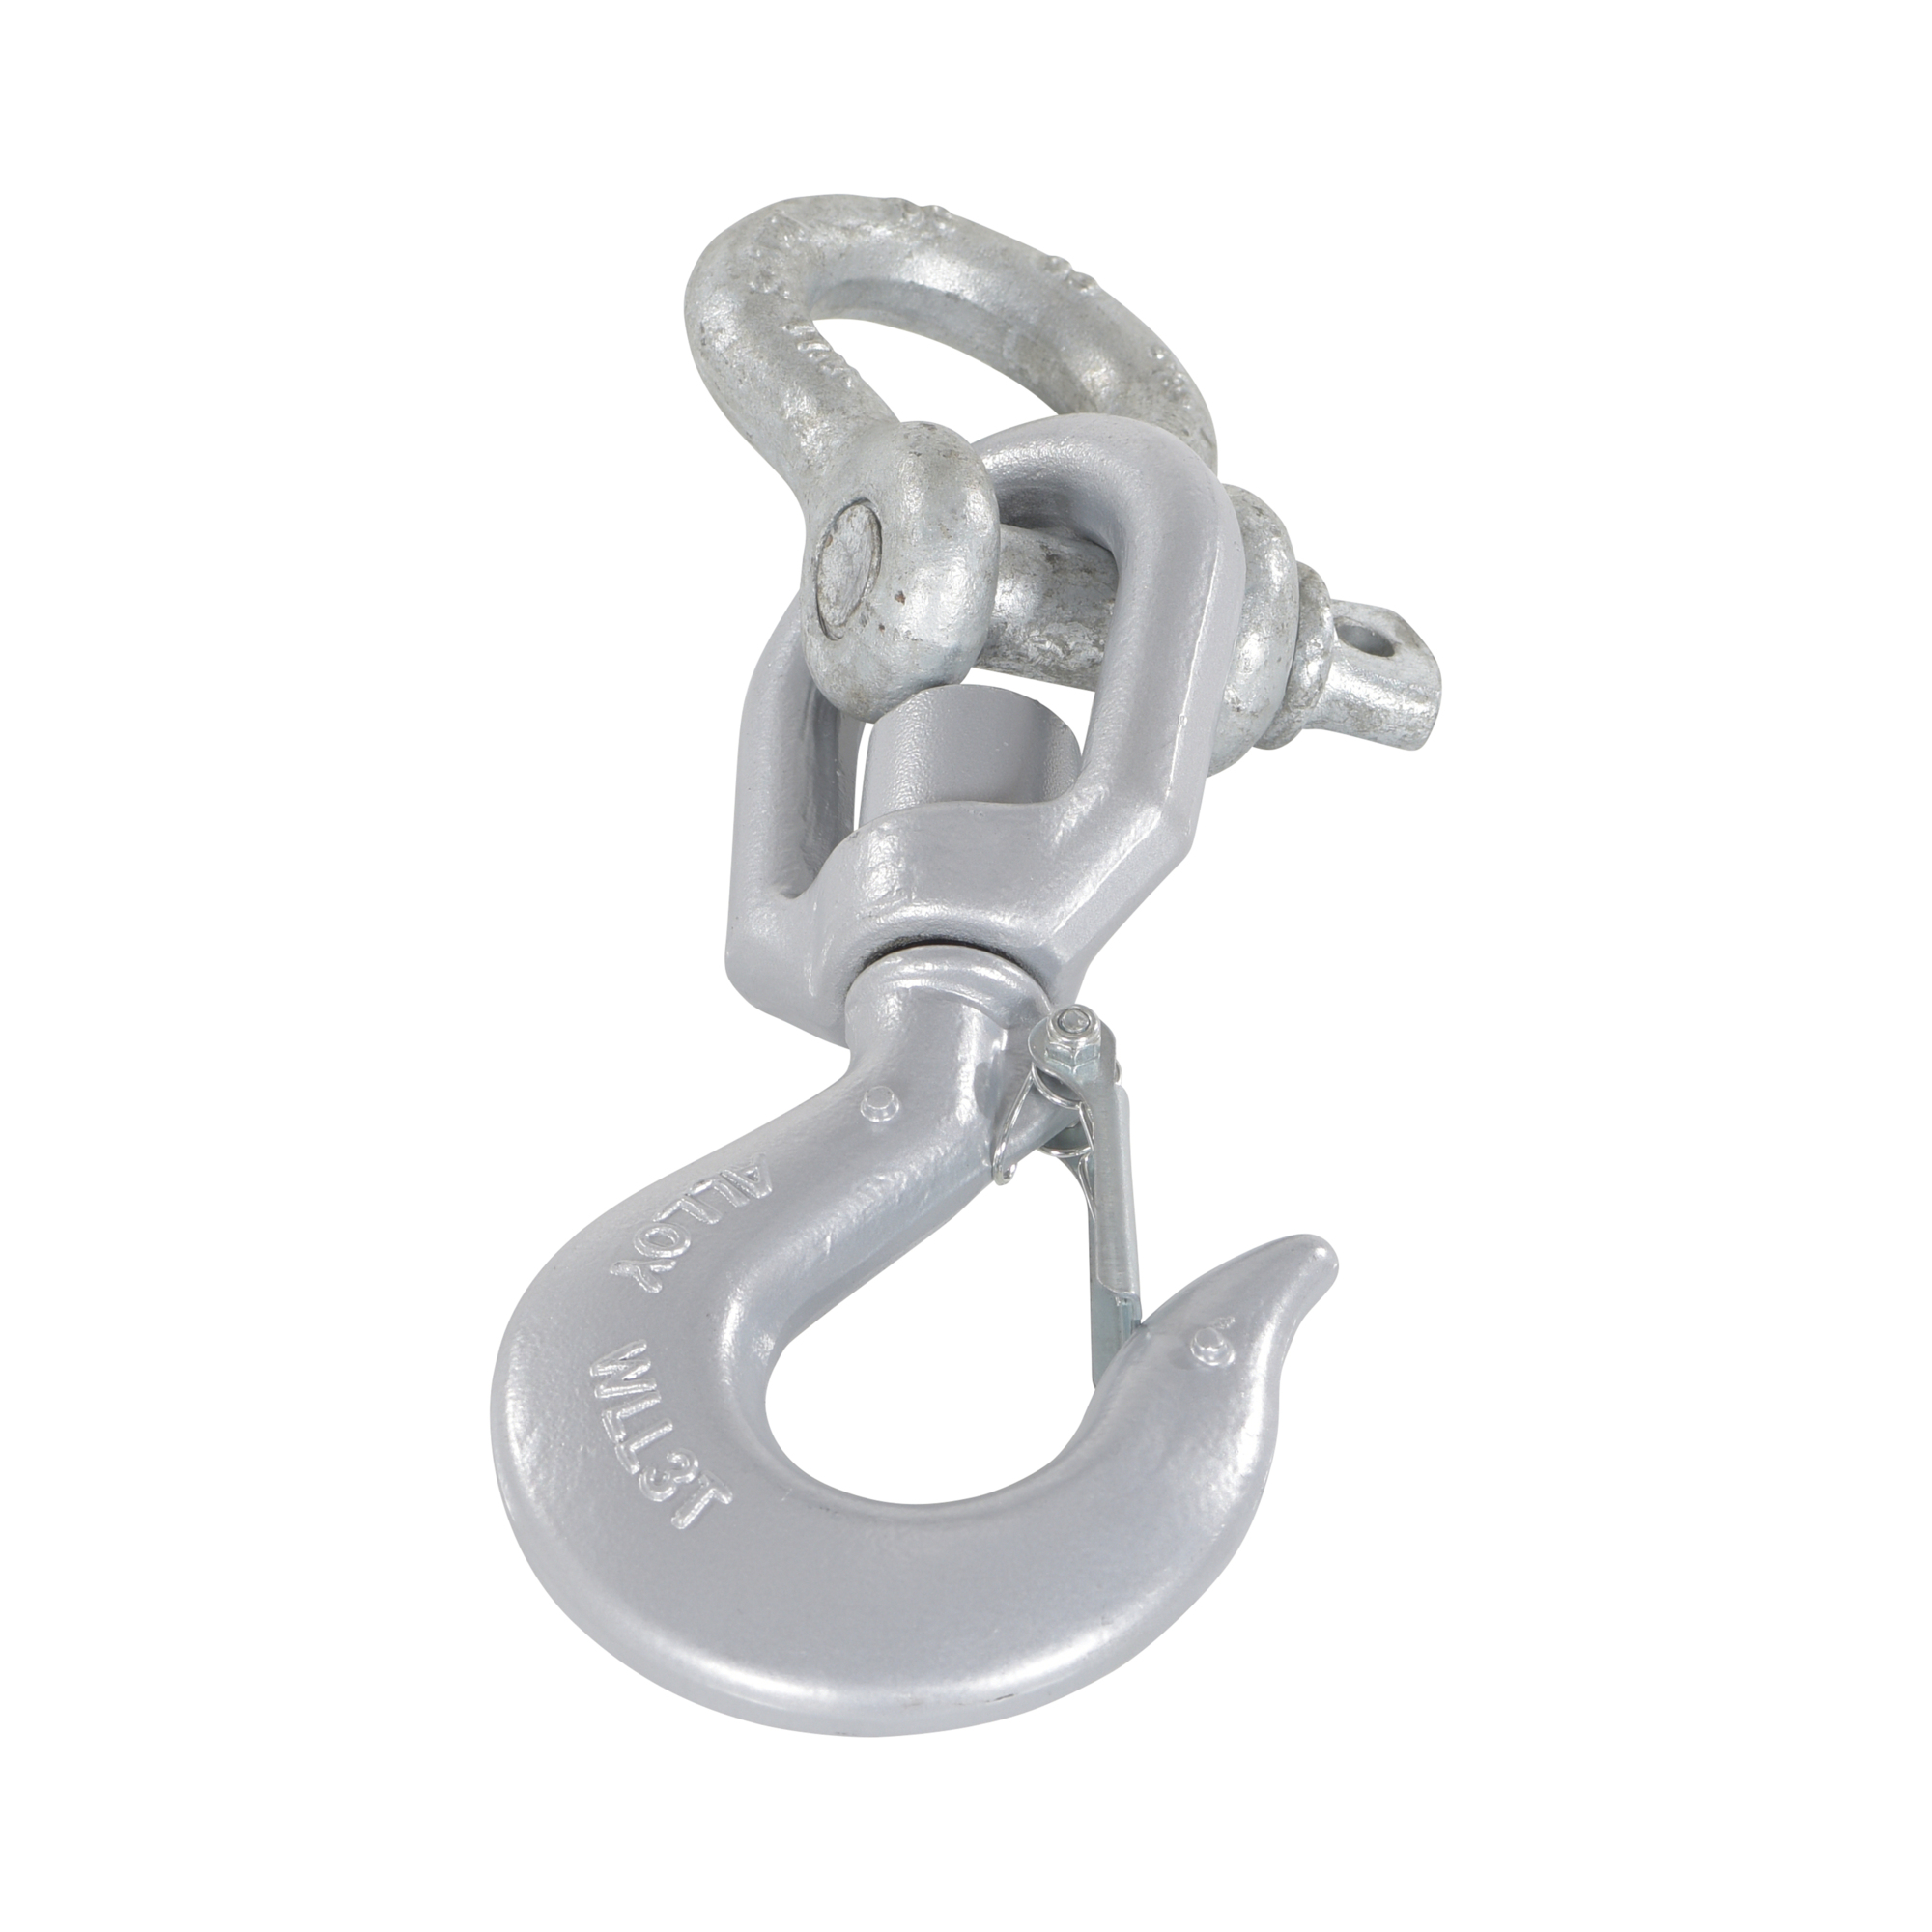 5/16 Stainless Steel Swivel Eye Hook with Latch 51606310